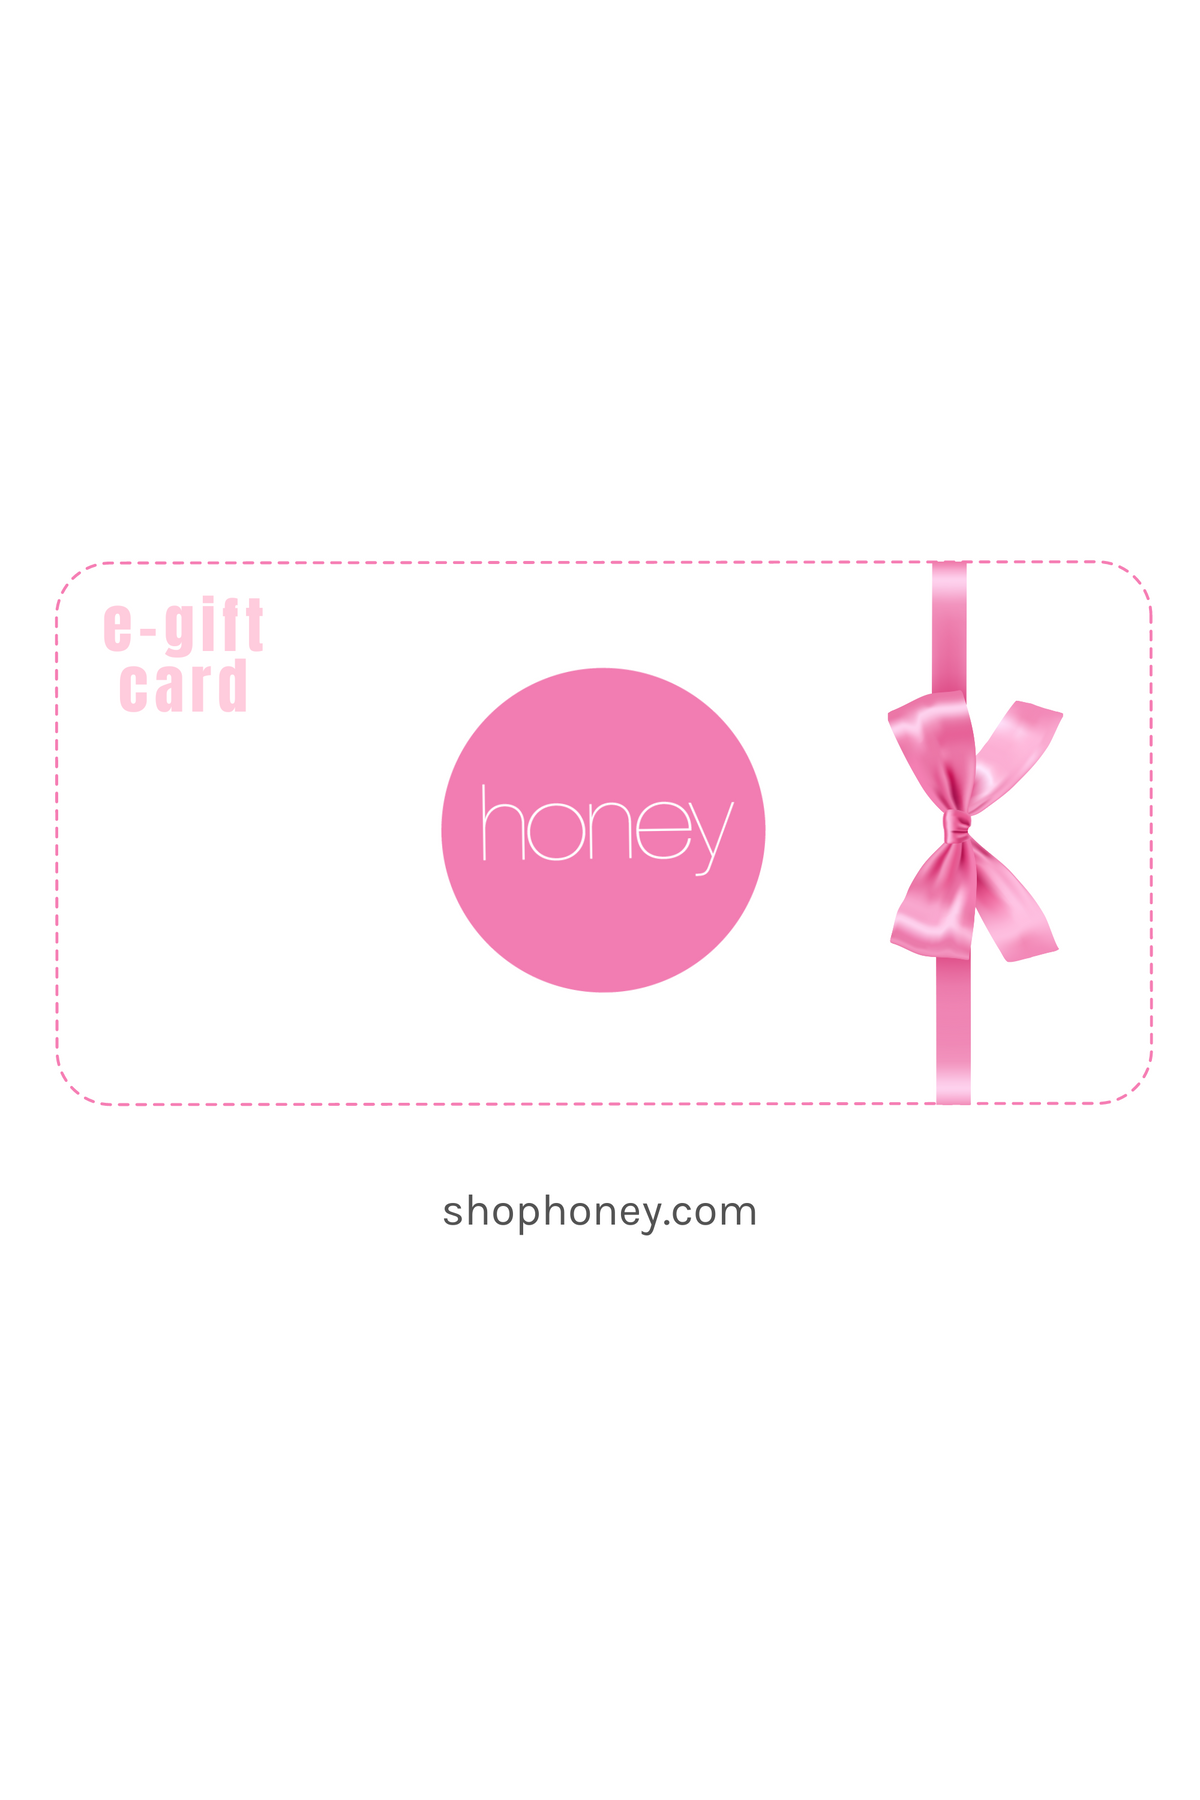 e-Gift Card - honey